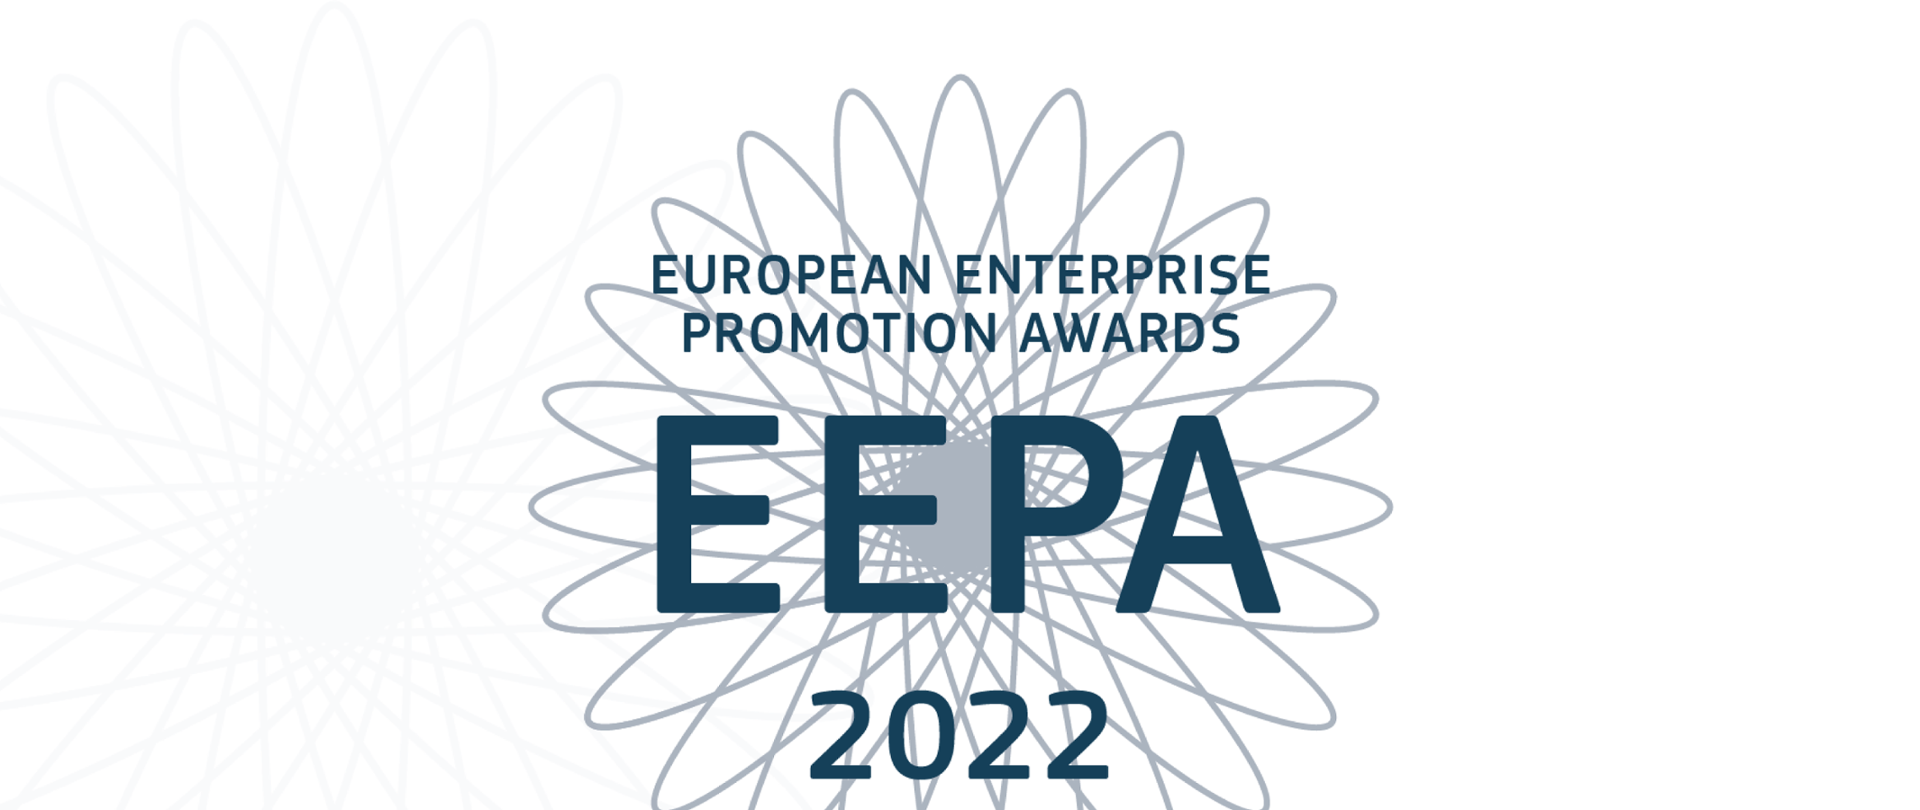 Na tle szarej grafiki napis EUROPEAN ENTERPRISE PROMOTION AWARDS EEPA 2022